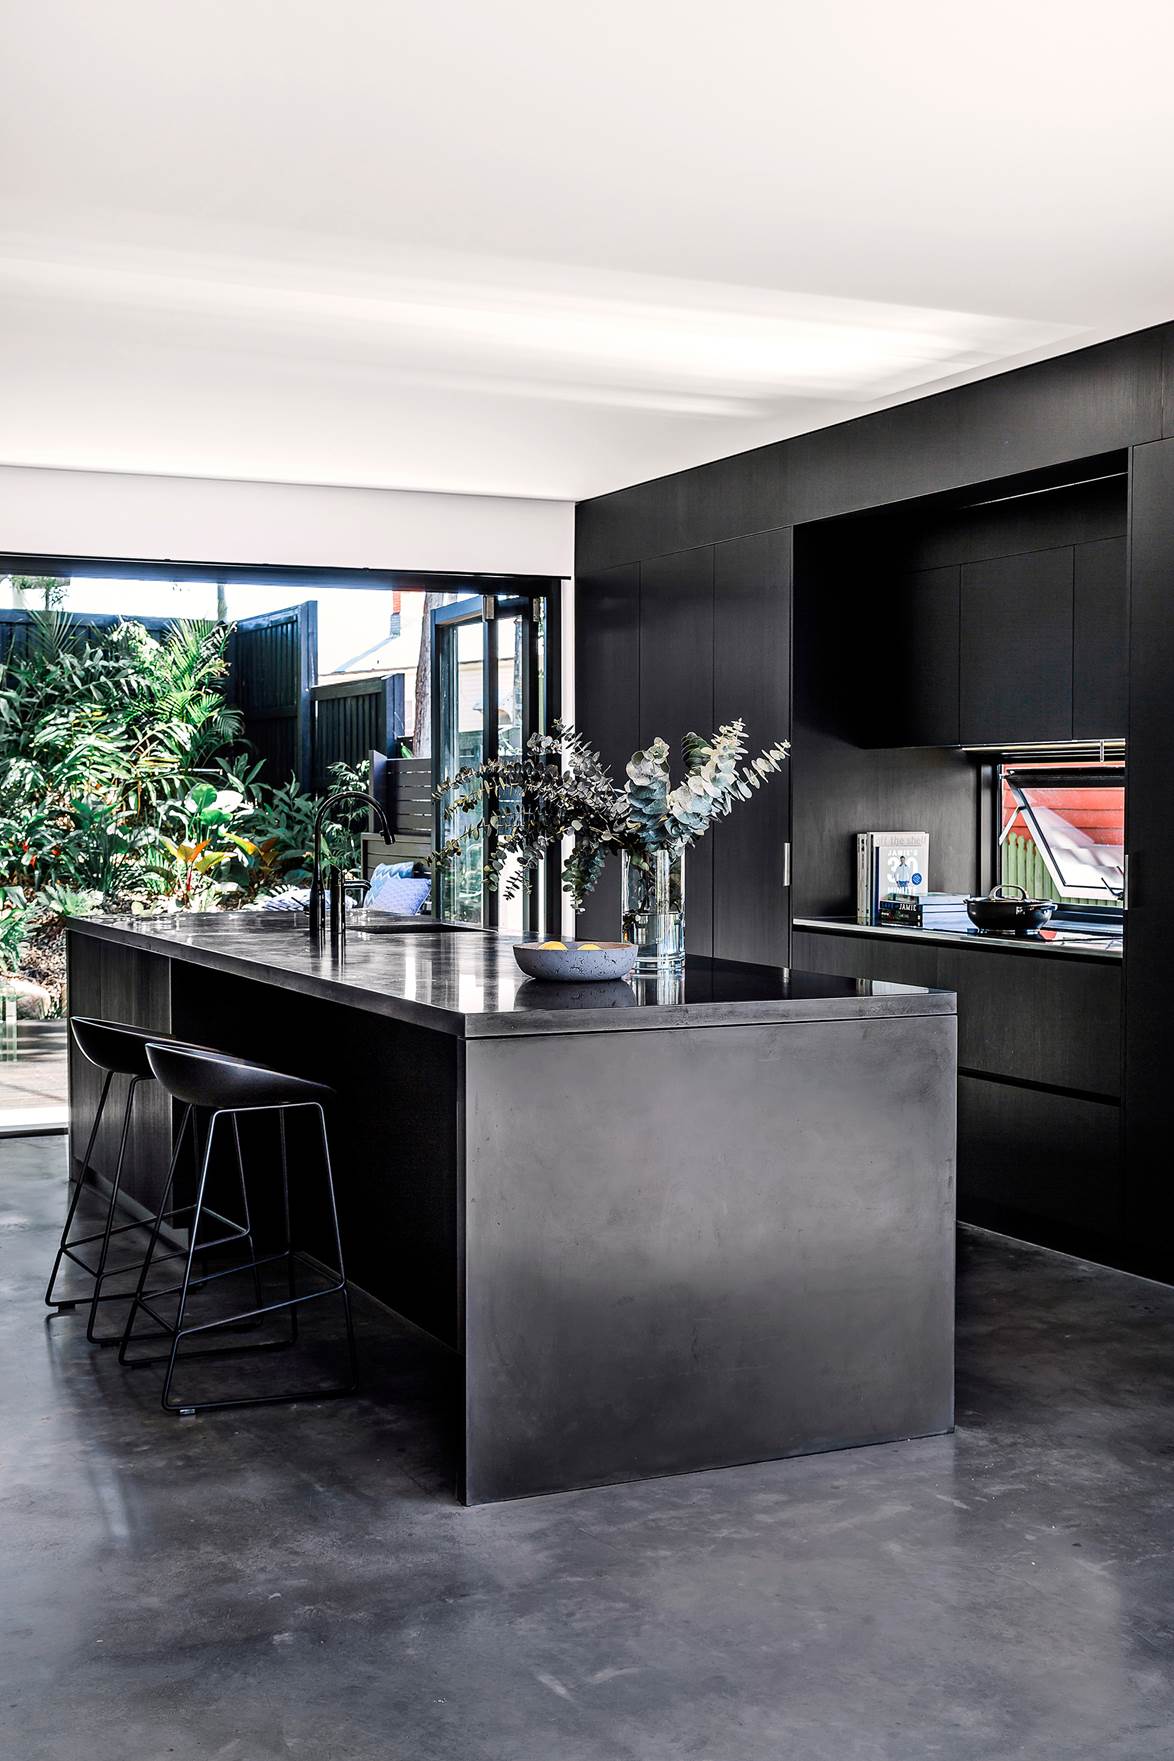 40+ Black kitchen ideas - black kitchen sink, black kitchen handles